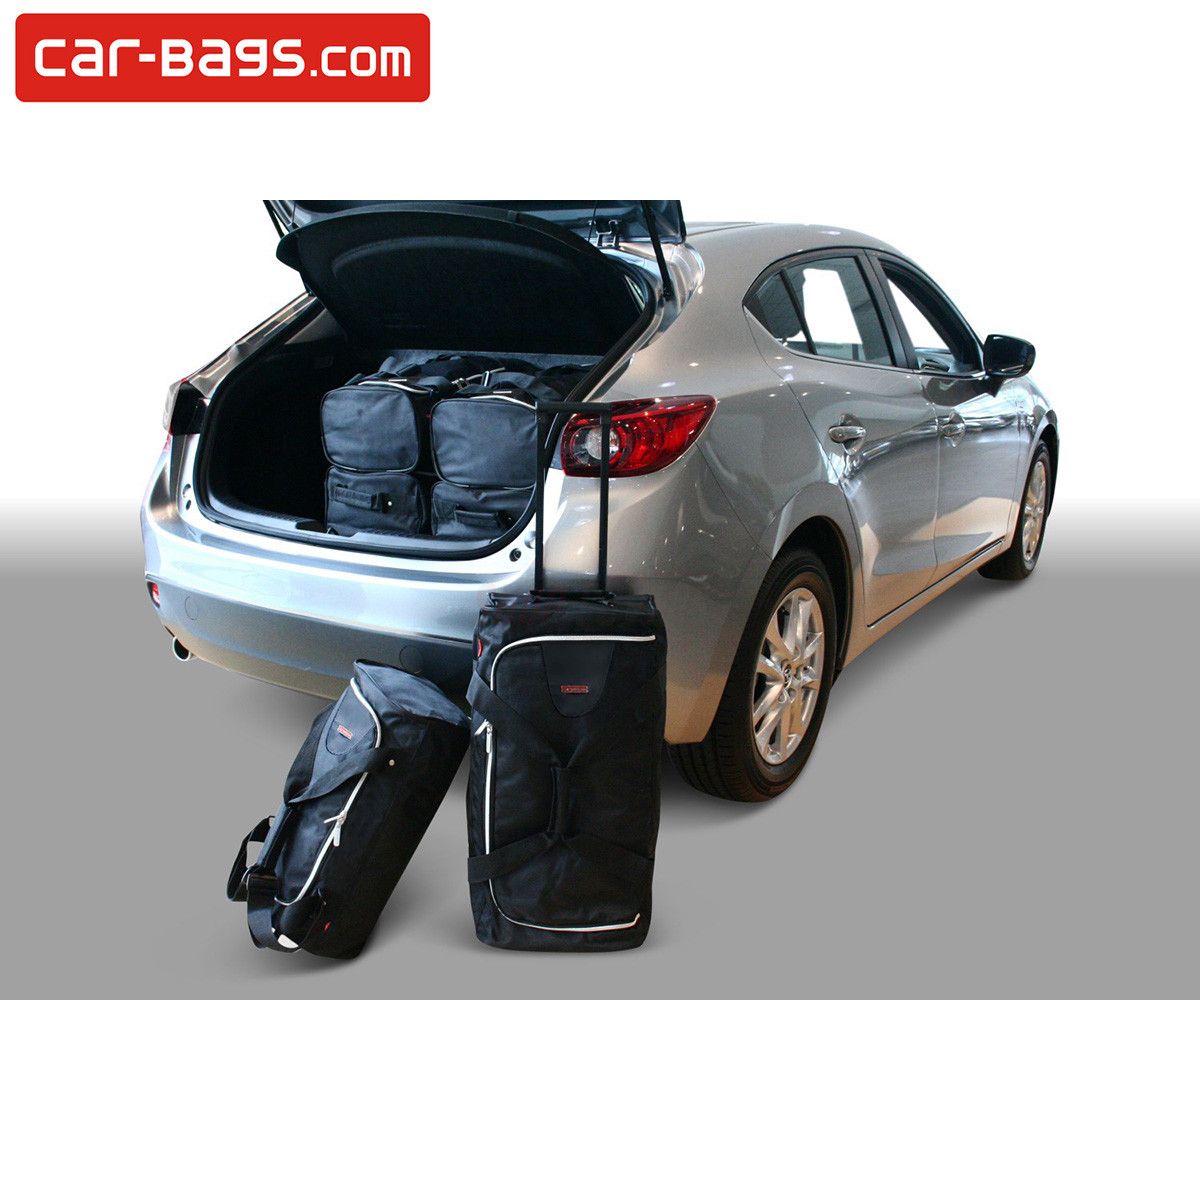 Housses de voiture Mazda - Acheter des sacs de voiture pour votre voiture?